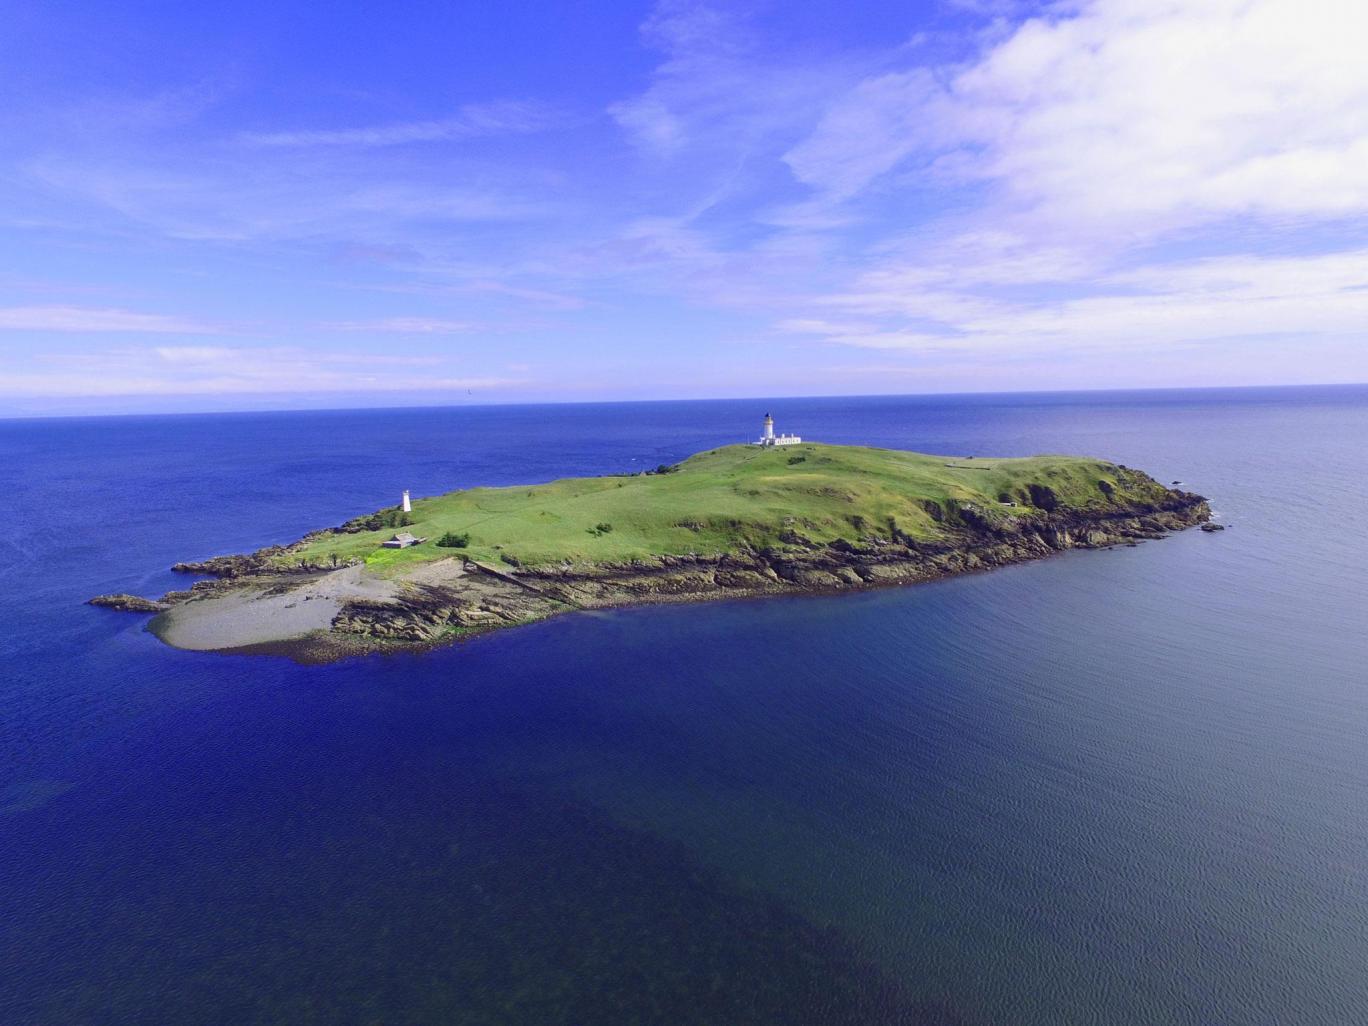 Little Ross, l'isola scozzese in vendita a 360mila euro: cottage, faro e quell'omicidio...